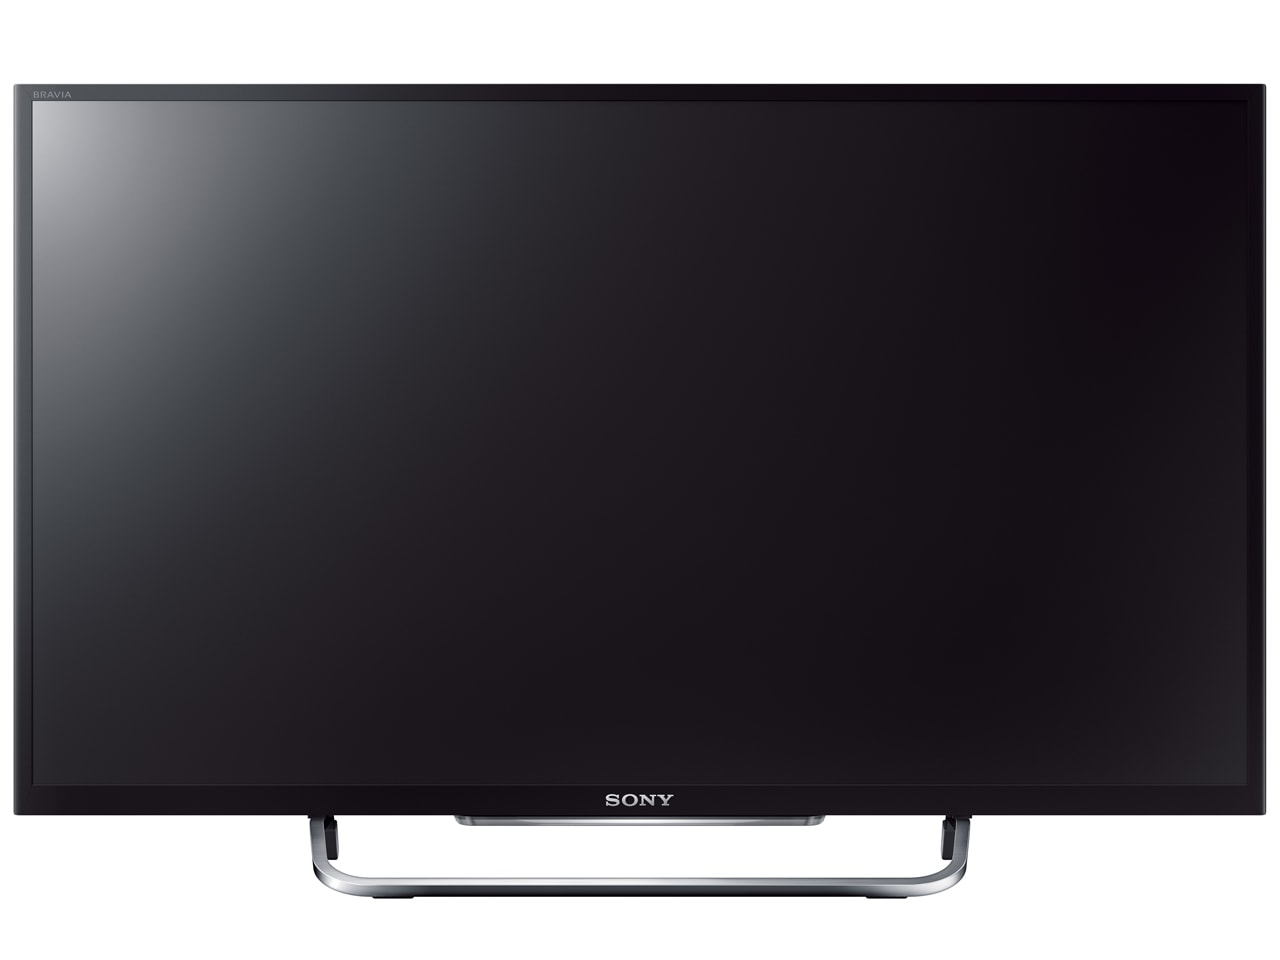 壁掛け金具対応検索 ソニー 32インチ液晶テレビサイズ一覧 テレビアクセサリー市場